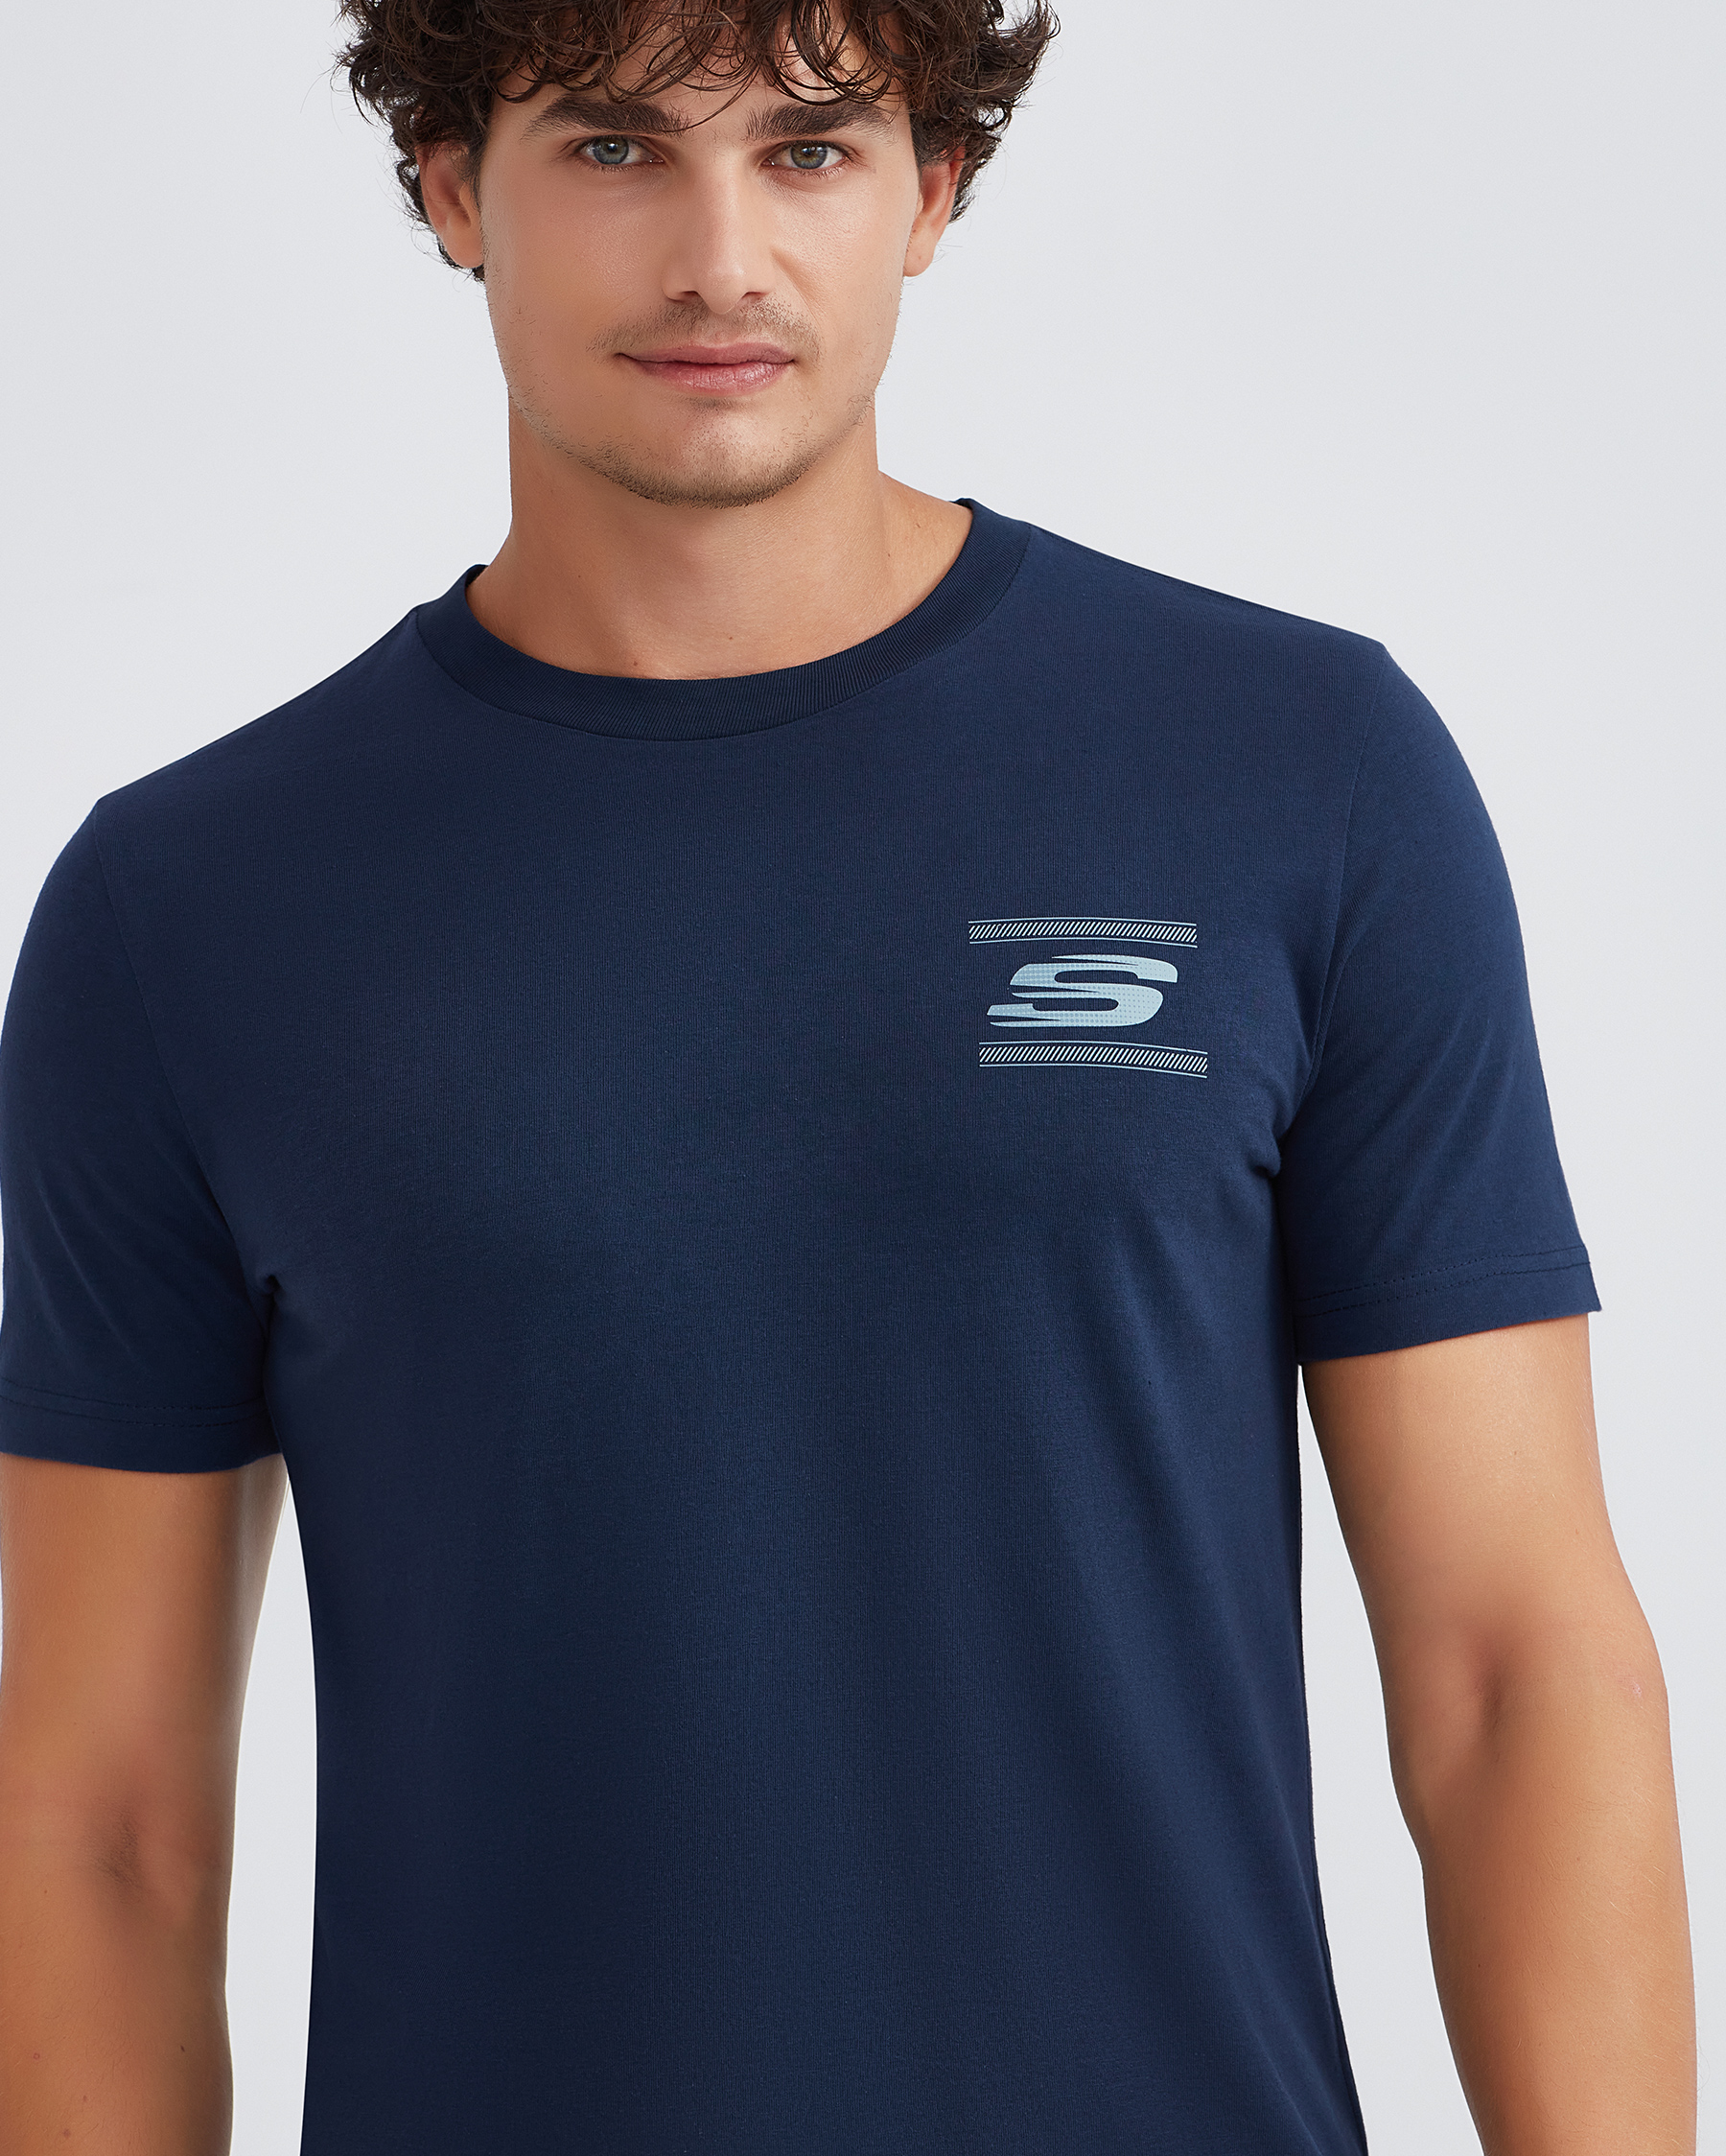 Skechers M Erkek Graphic Tee T-shirt Tshirt Crew Neck Lacivert S232339-410